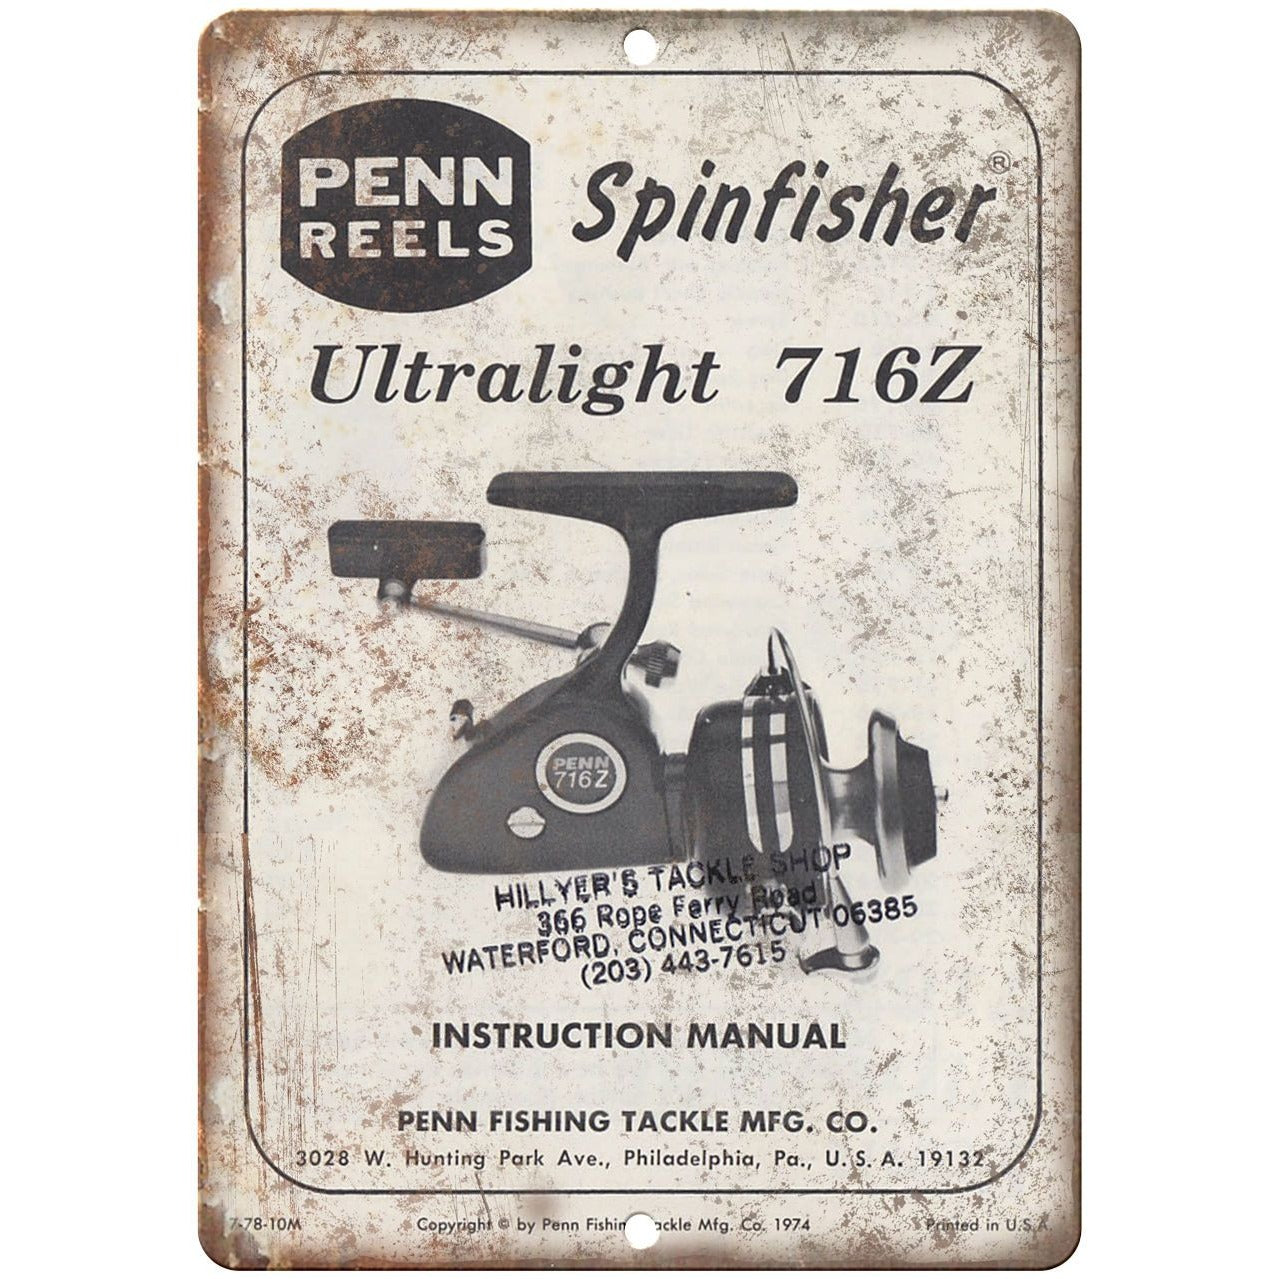 Penn 716z Ultralight spinning reel nice!